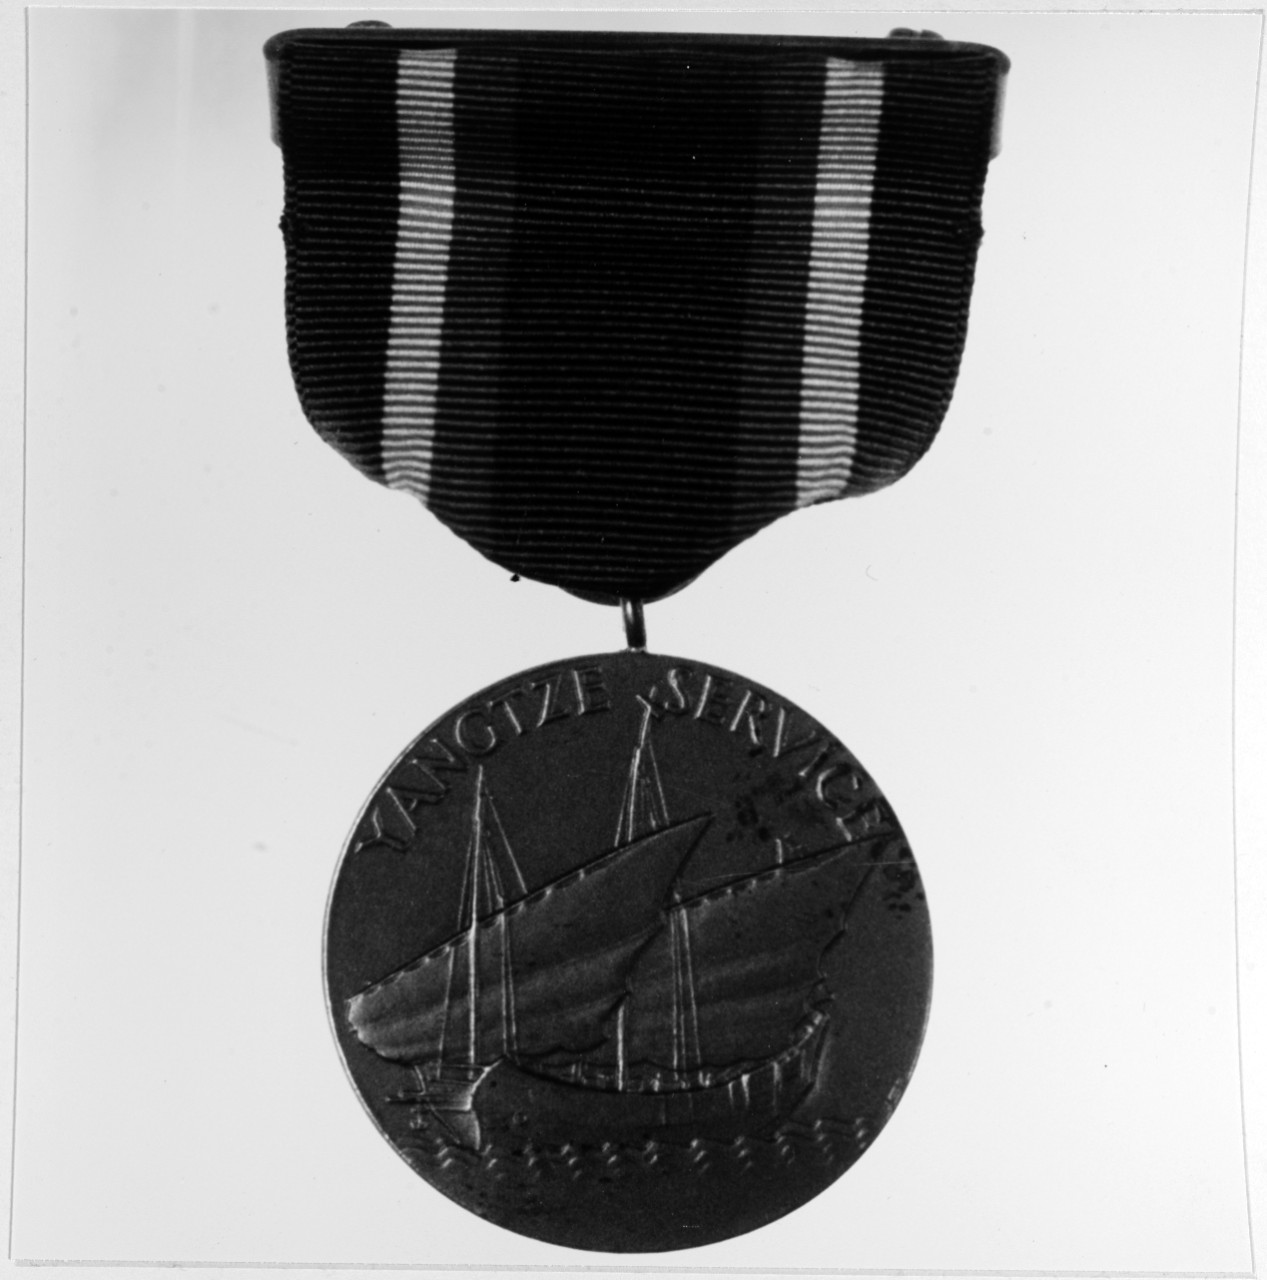 Yangtze Service Medal